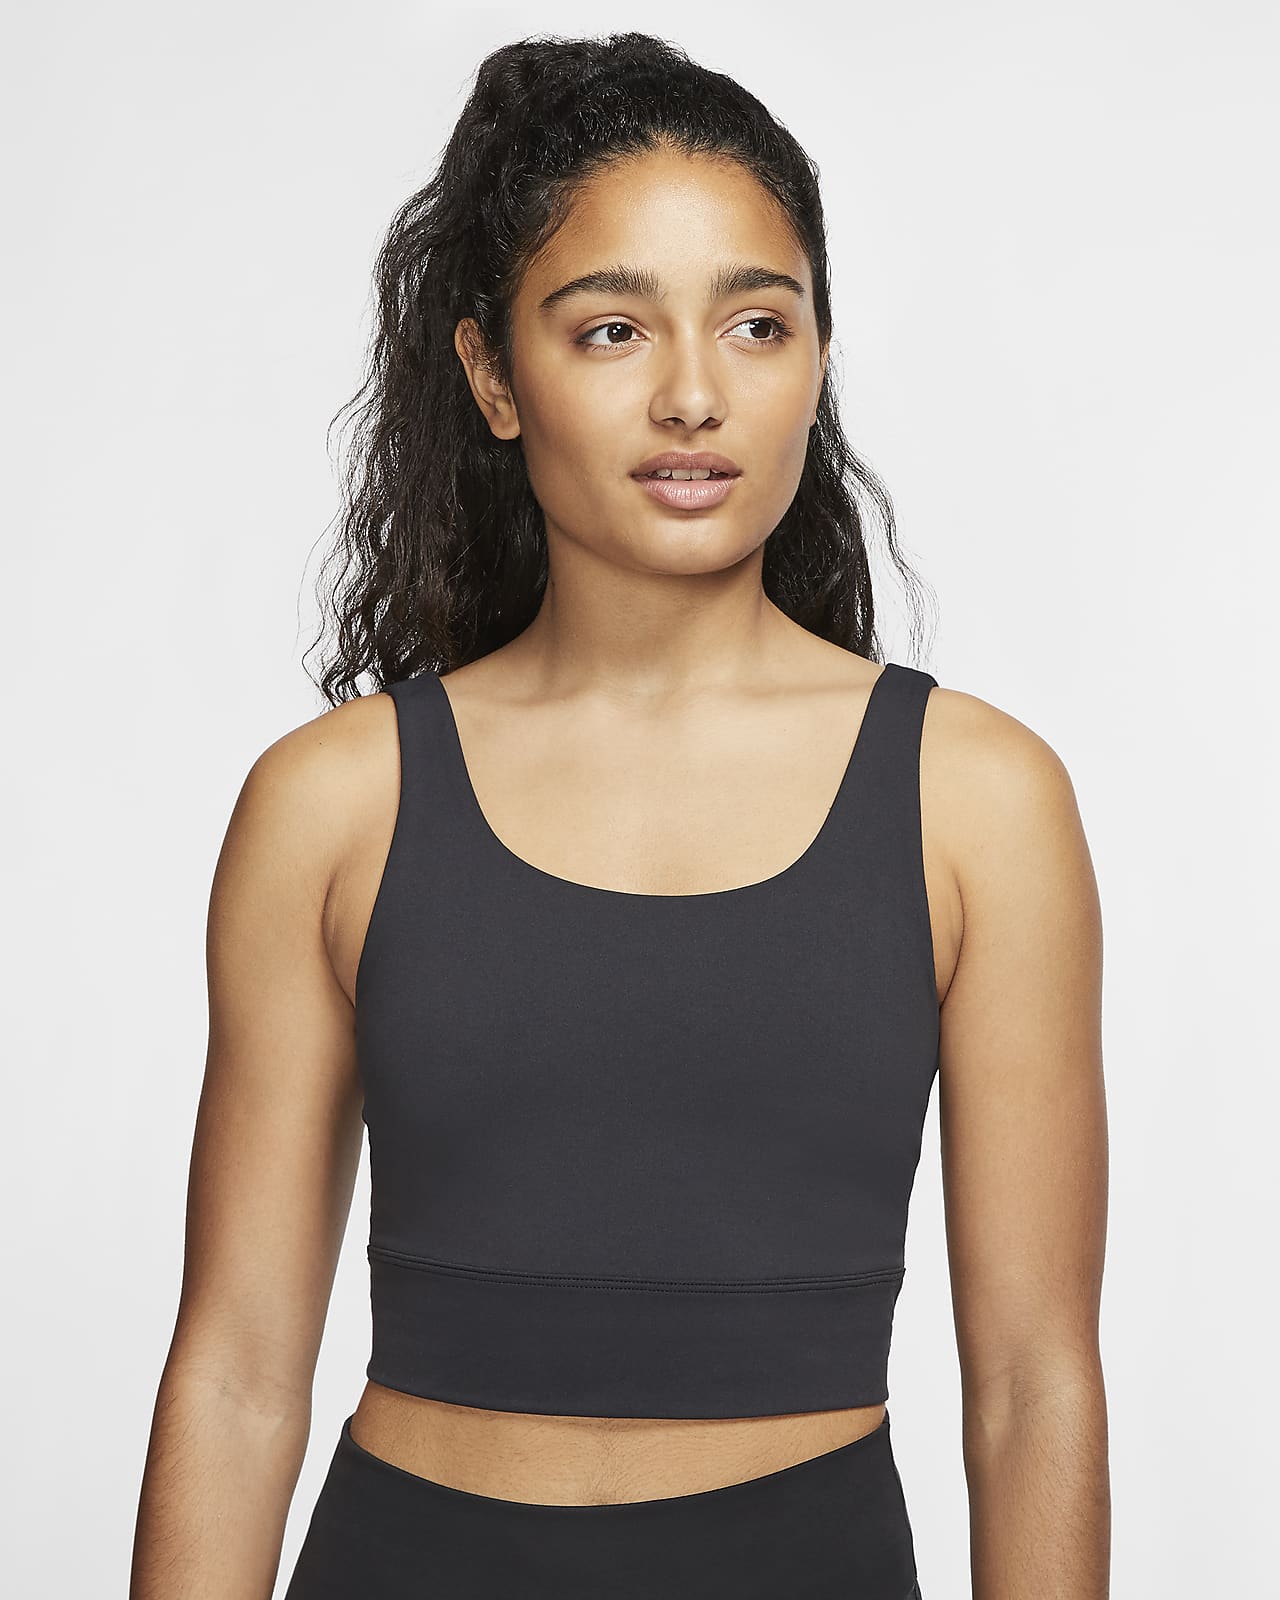 Damska krótka koszulka Infinalon Nike Yoga Luxe